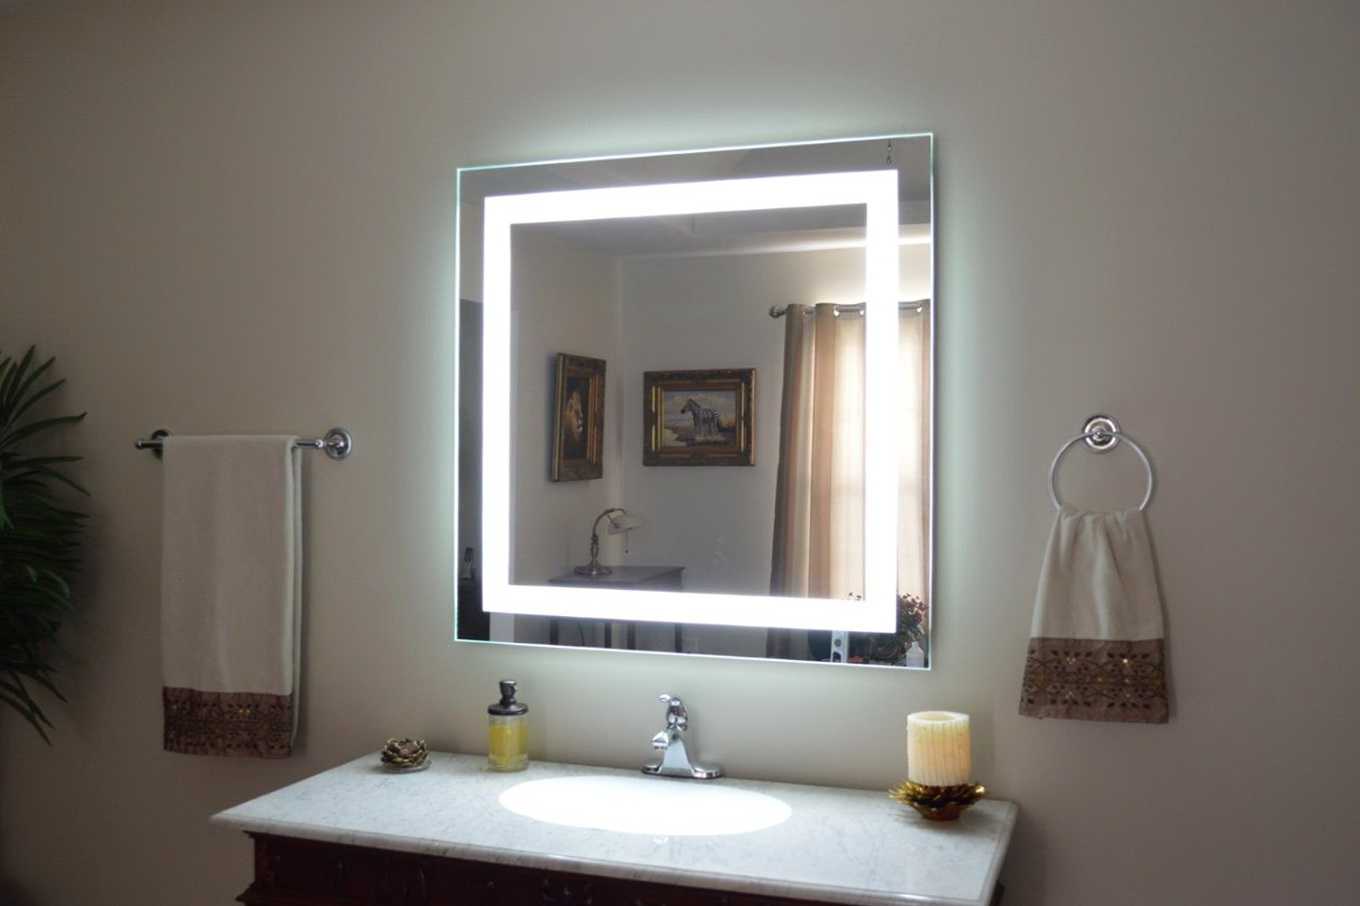 Виды подсветки для зеркала в ванной, варианты установки и подключения 7 - ДиванеТТо